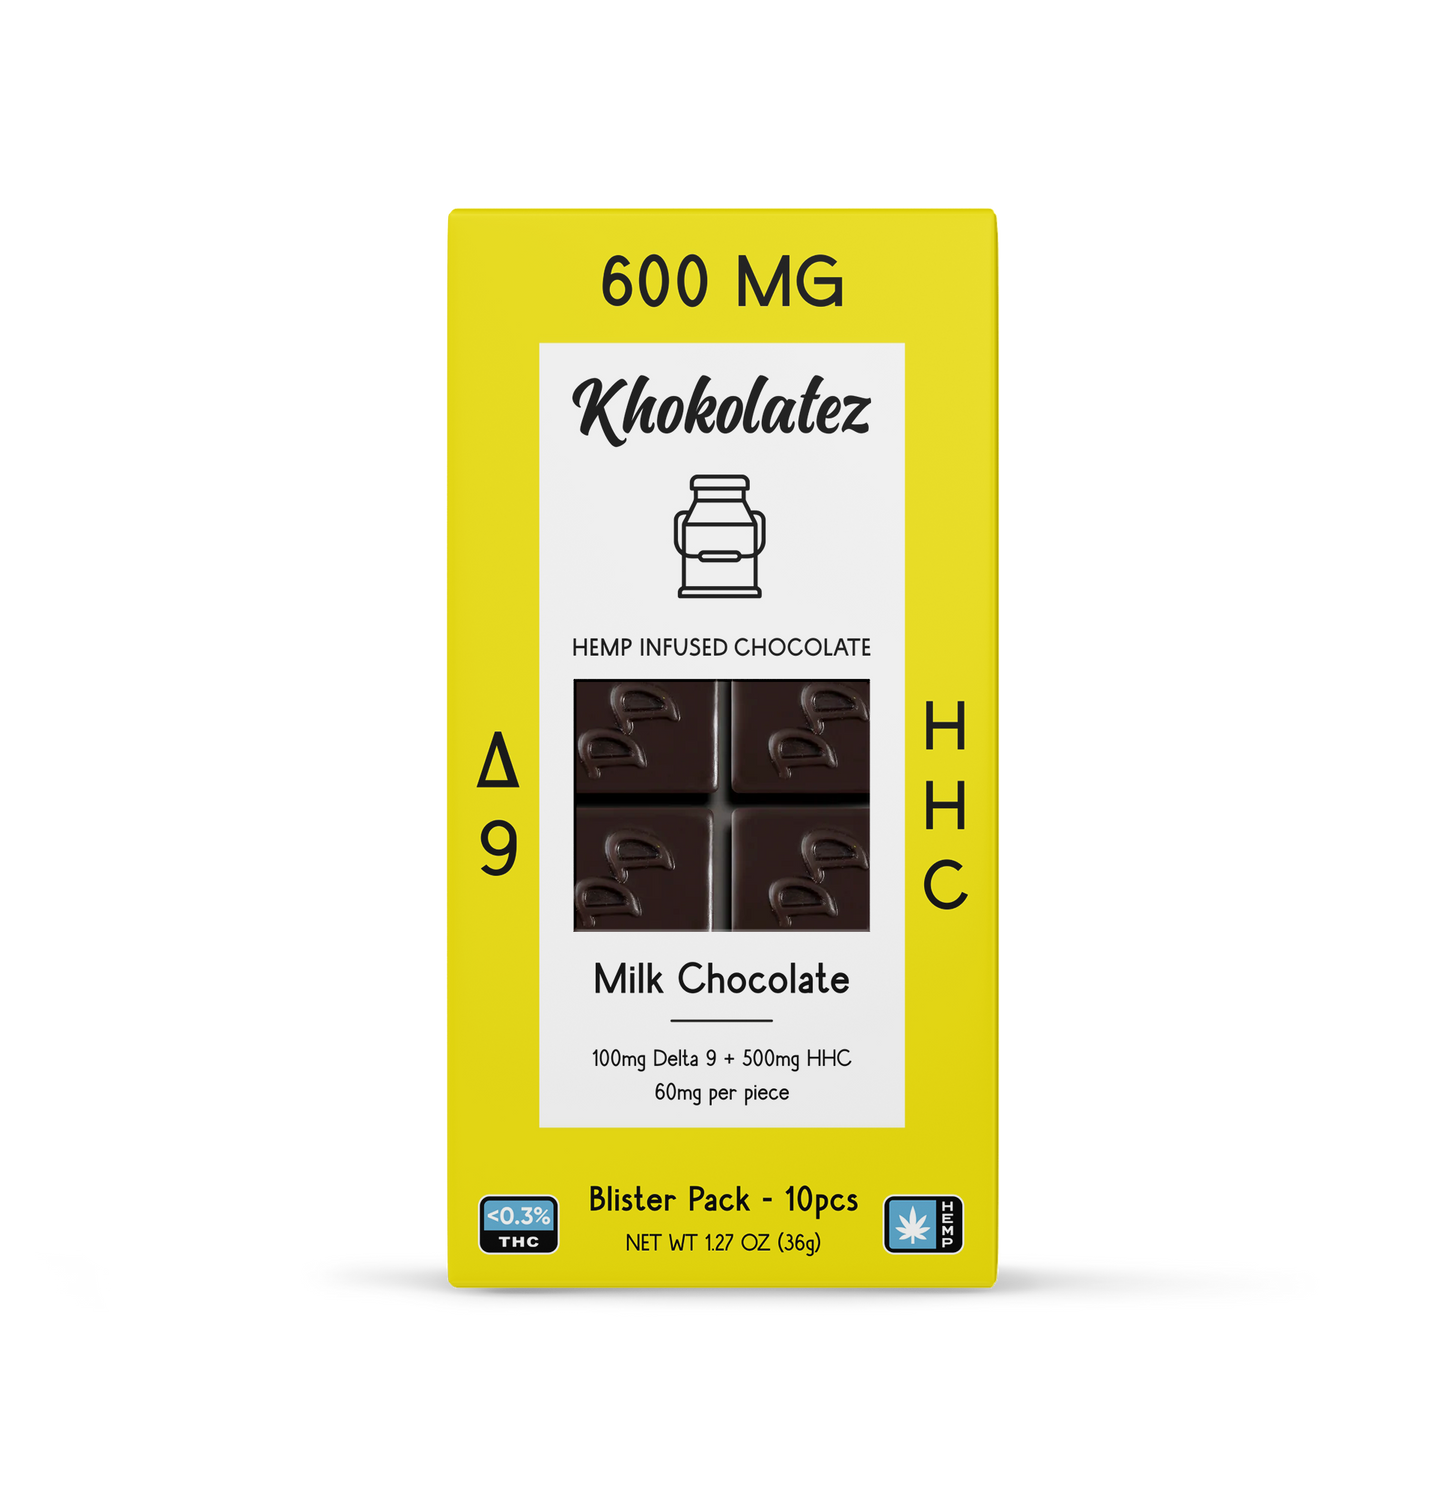 Khokolatez Delta 9 + HHC Chocolates - Unit